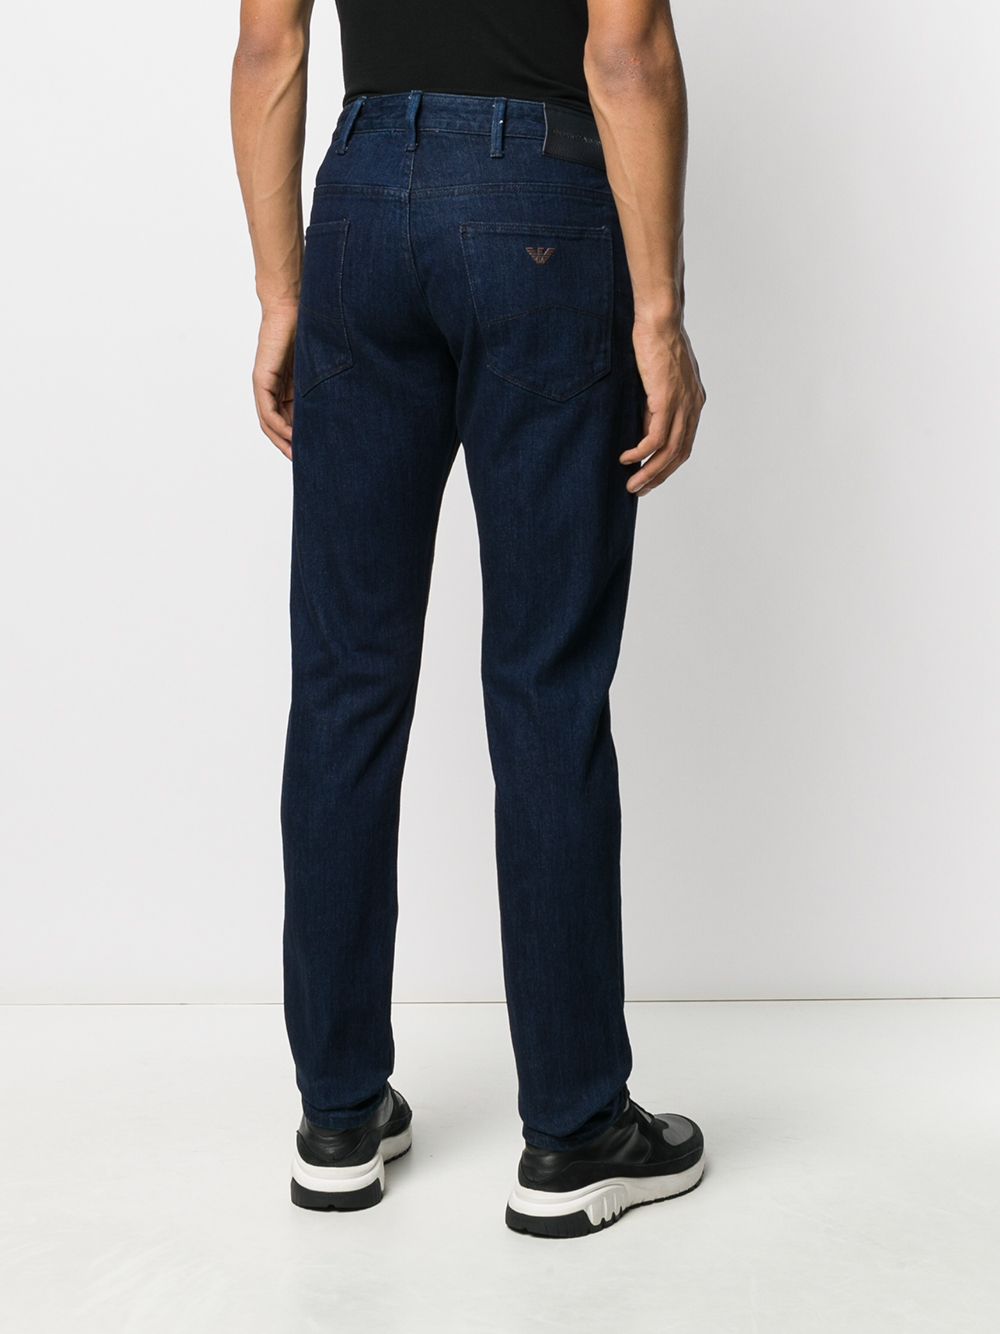 фото Emporio armani джинсы кроя слим с завышенной талией